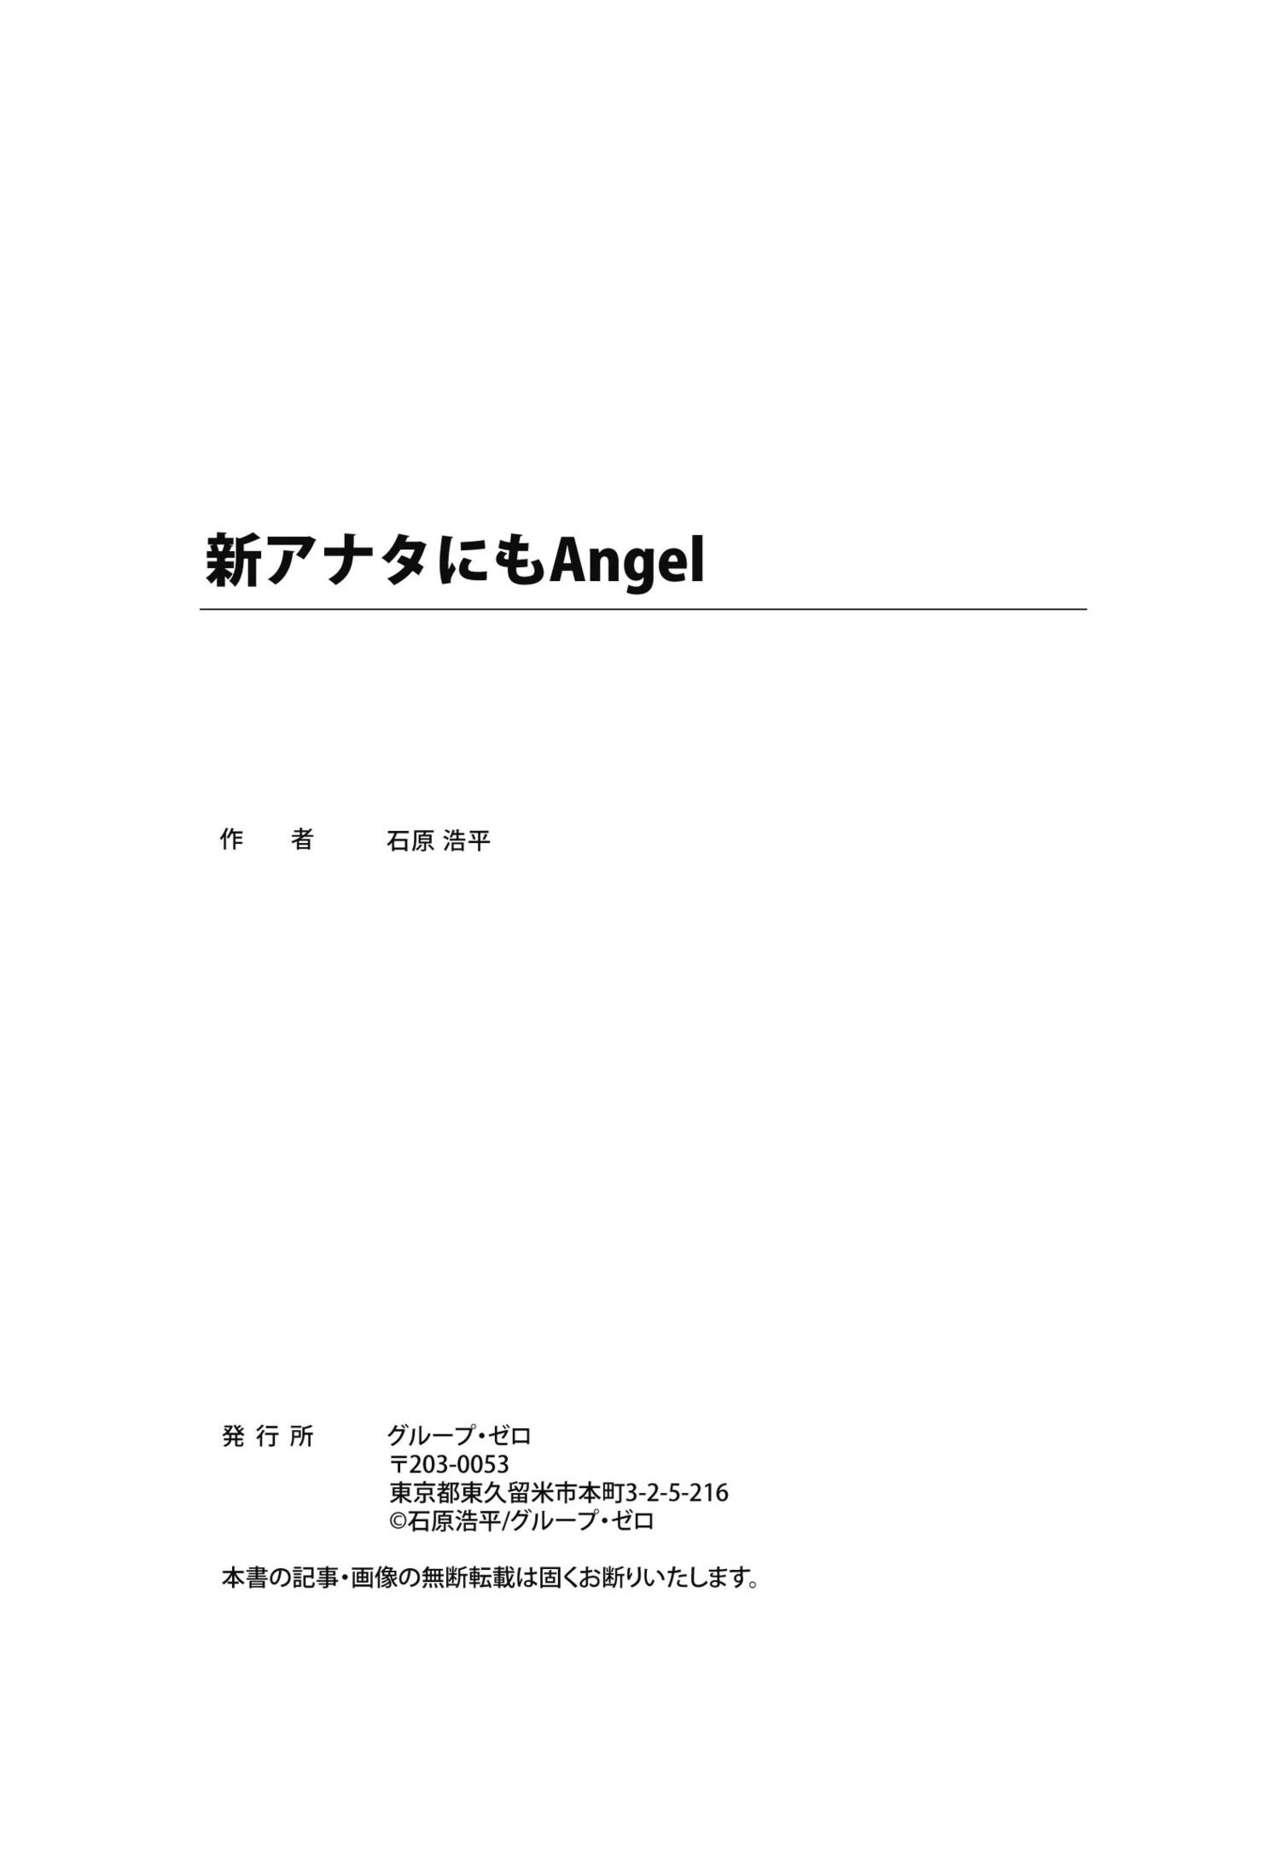 Shin Anata ni mo Angel 225